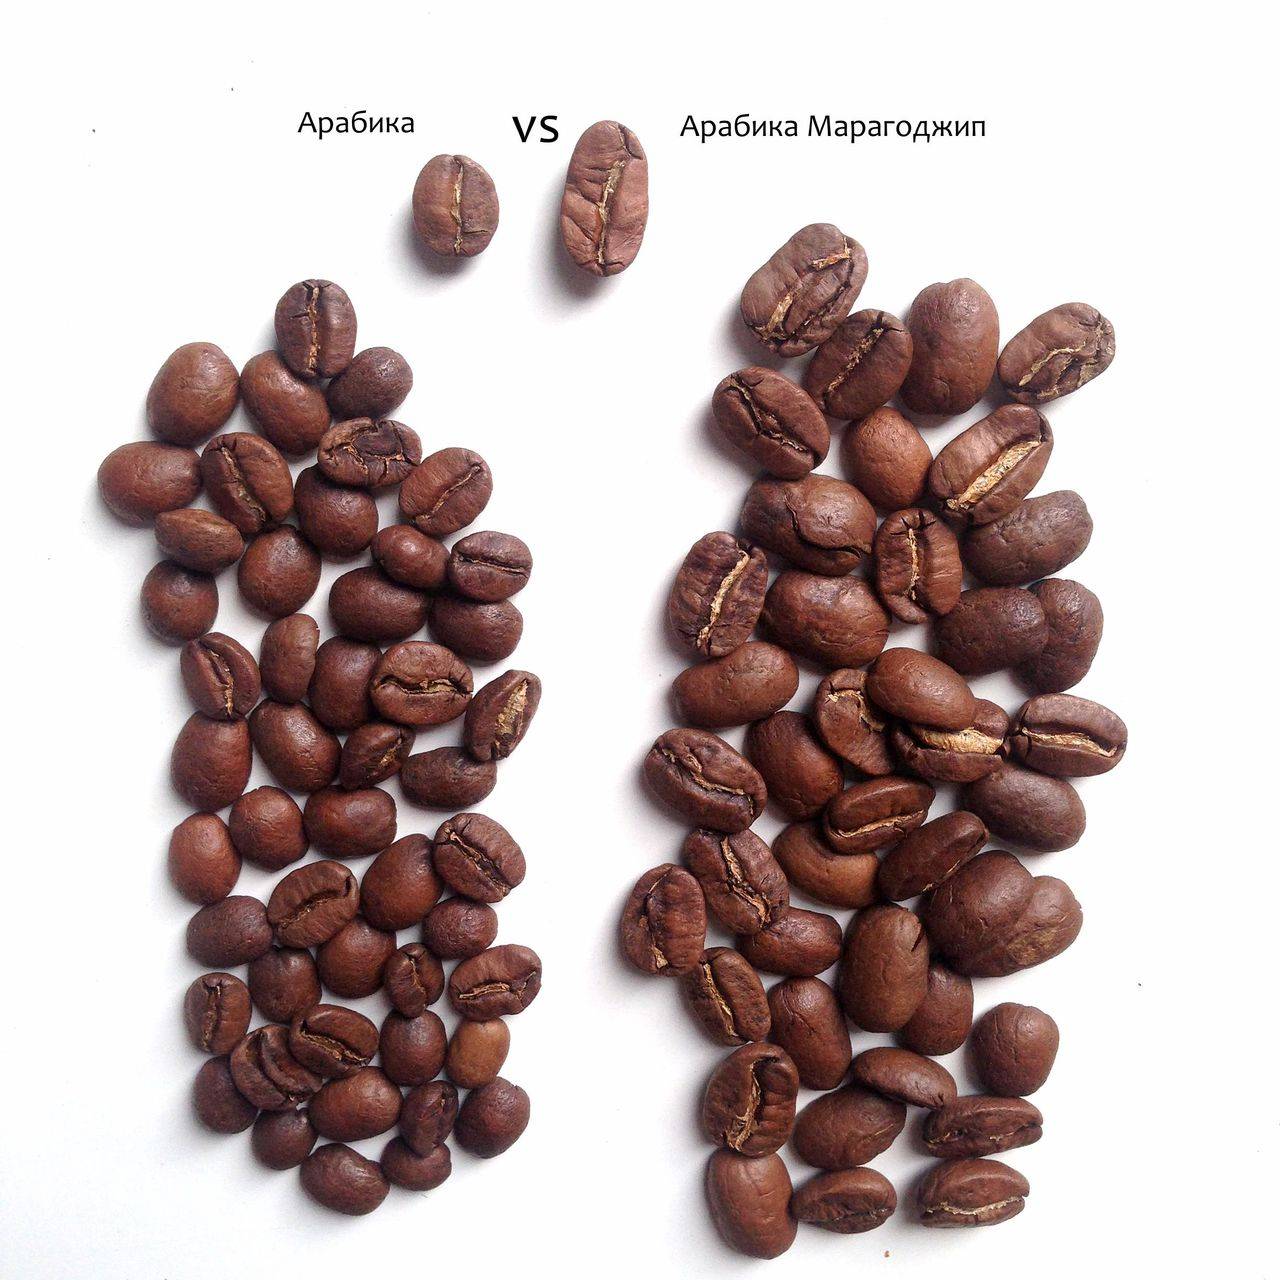 ☕лучшие бренды зернового кофе 2021. пользовательские отзывы, а также профессиональные рейтинги.